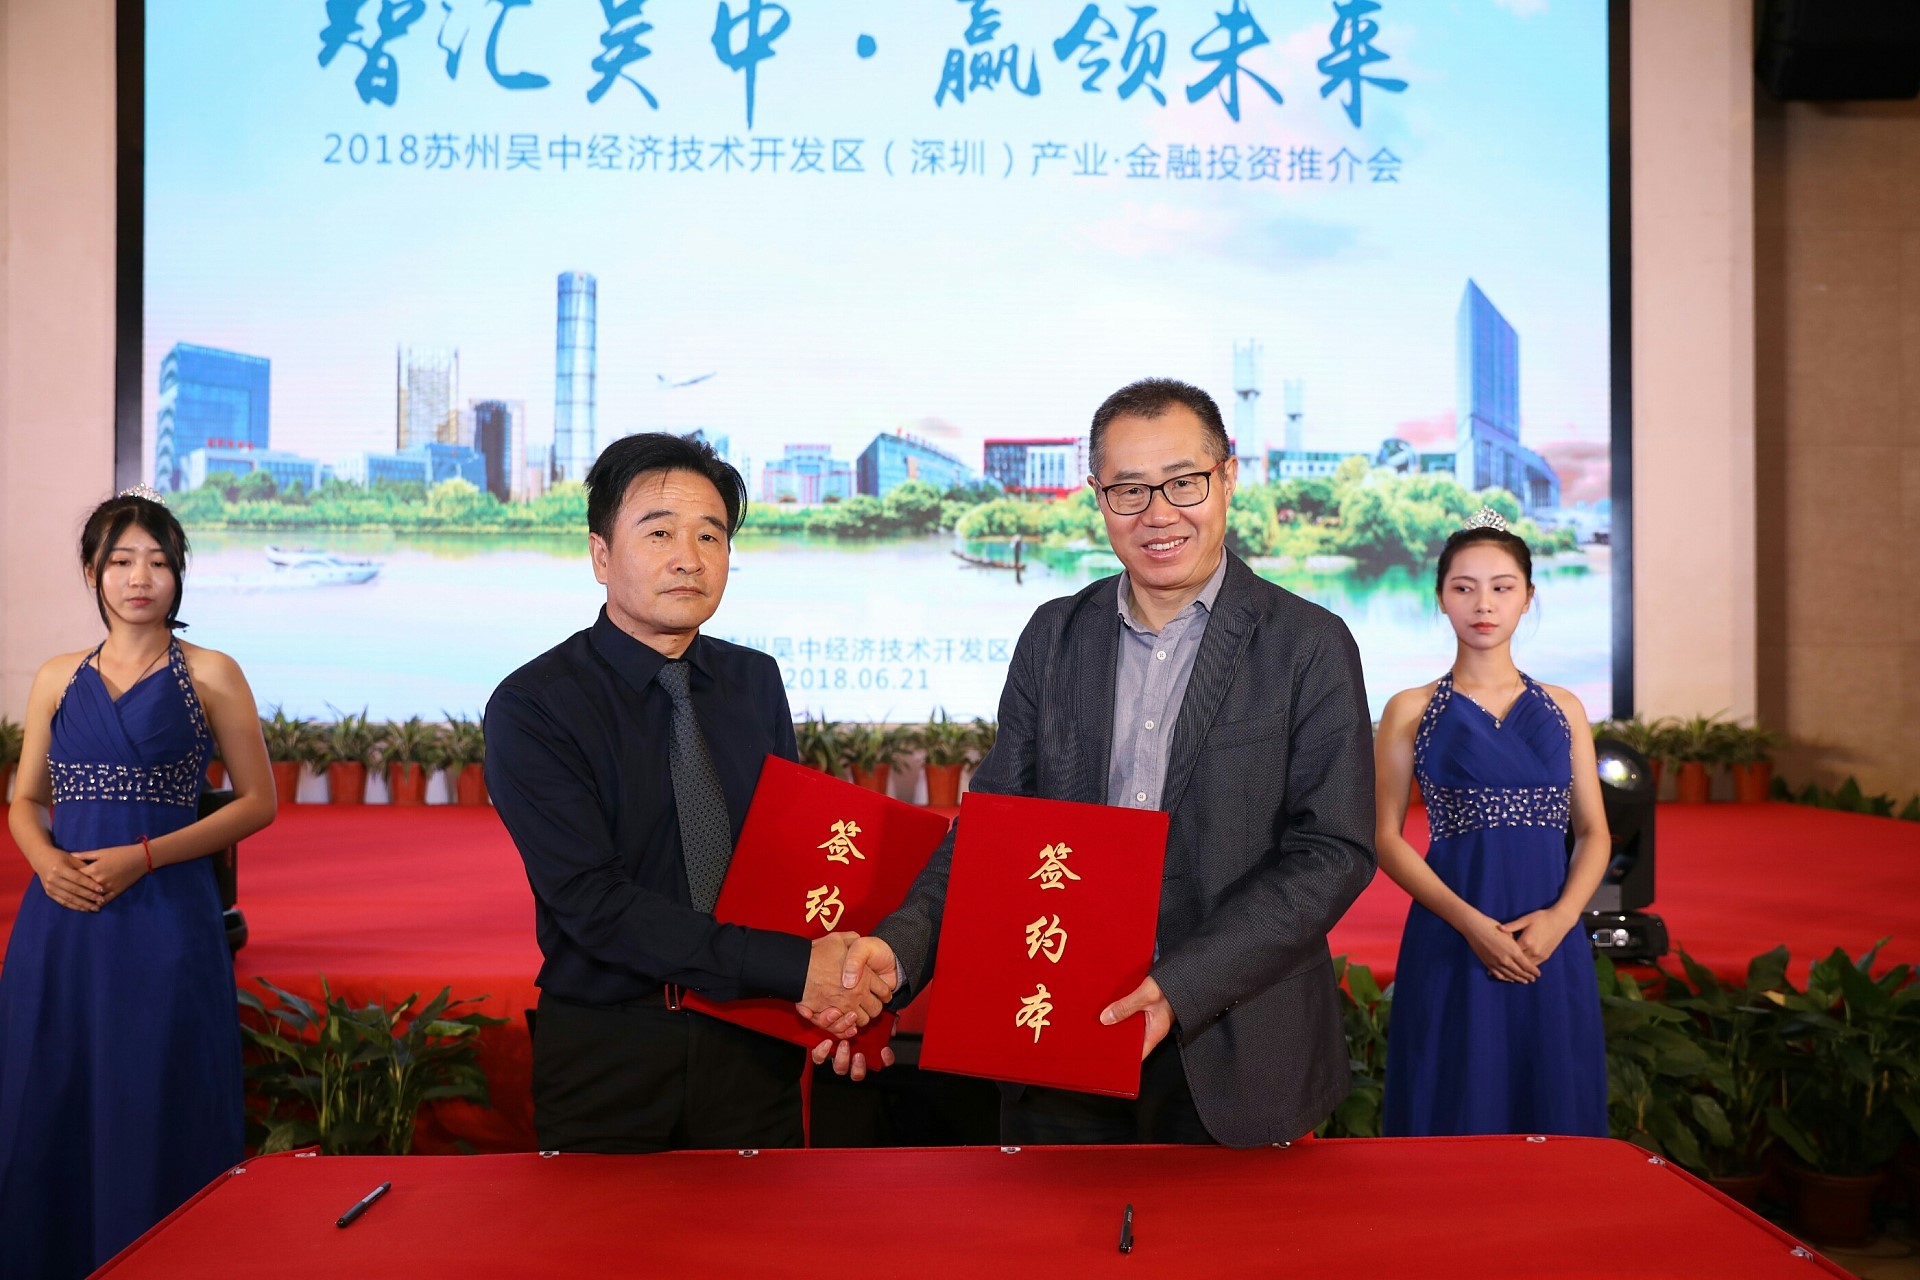 高特佳投资与苏州吴中金控签署战略合作协议深化大健康产业布局